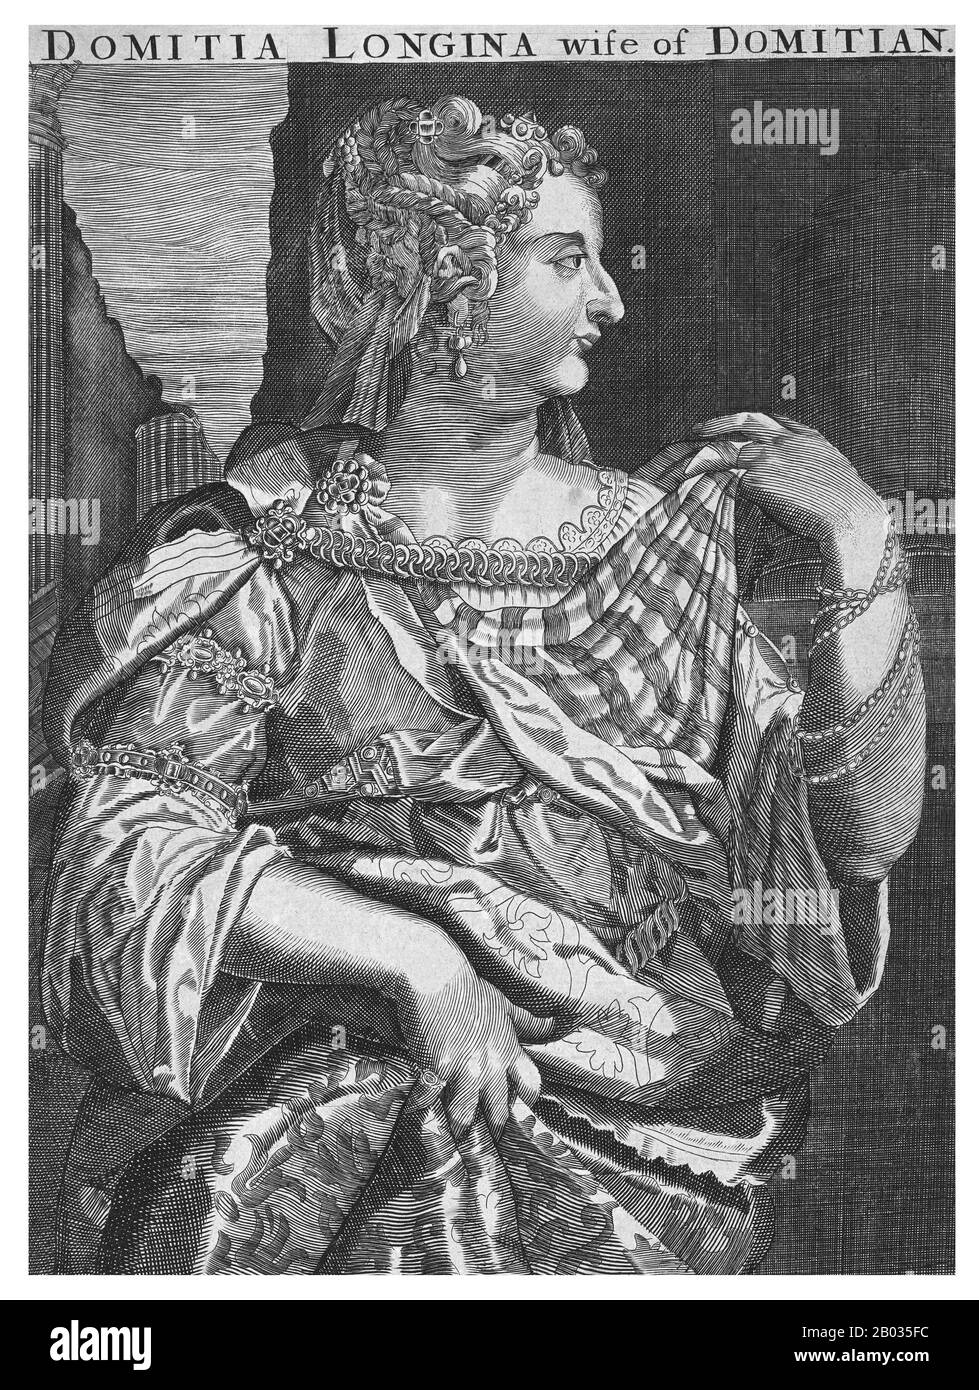 Domitia Longina (53/55-126/130 CE) war Ehefrau von Domitian und eine Kaiserin Roms. Sie ließ sich von ihrem früheren Ehemann Luzius Aelius Lamia scheiden, um Domitian 71 v. Chr. zu heiraten, und zusammen hatten sie einen Sohn. Sein früher Tod führte dazu, dass sie eine Weile auseinanderdriften, wobei Domitian Domitia kurzzeitig ausrief, weil er keinen weiteren Erben hervorgebracht hatte. Er erinnerte sich aber bald an sie, und trotz der Gerüchte, Domitian habe eine inzestuöse Beziehung zu seiner Nichte Julia Flavia, heißt es, Domitia lebe weiterhin ohne Zwischenfälle im Palast. Sie überlebte Domitians Ermordung im Jahr 96 CE und starb friedlich dekadenfrei Stockfoto